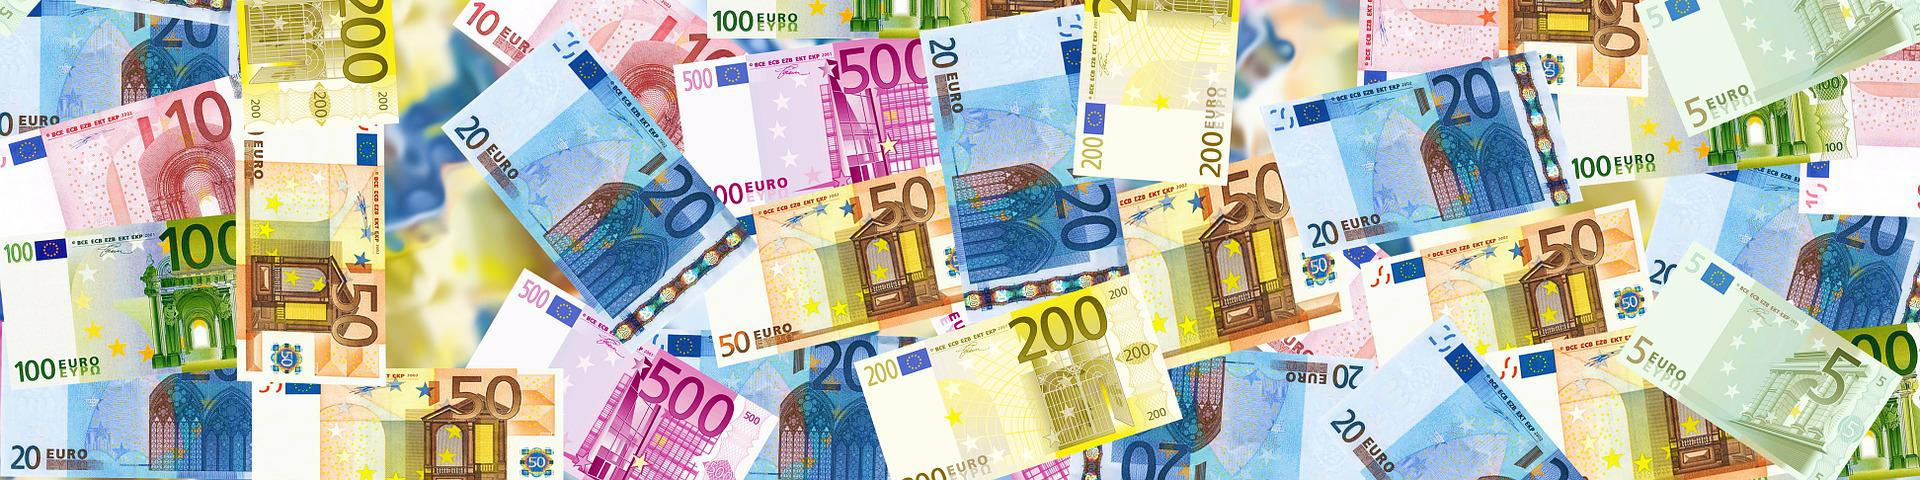 Symbolbild: eine große Menge Euro-Geldscheine